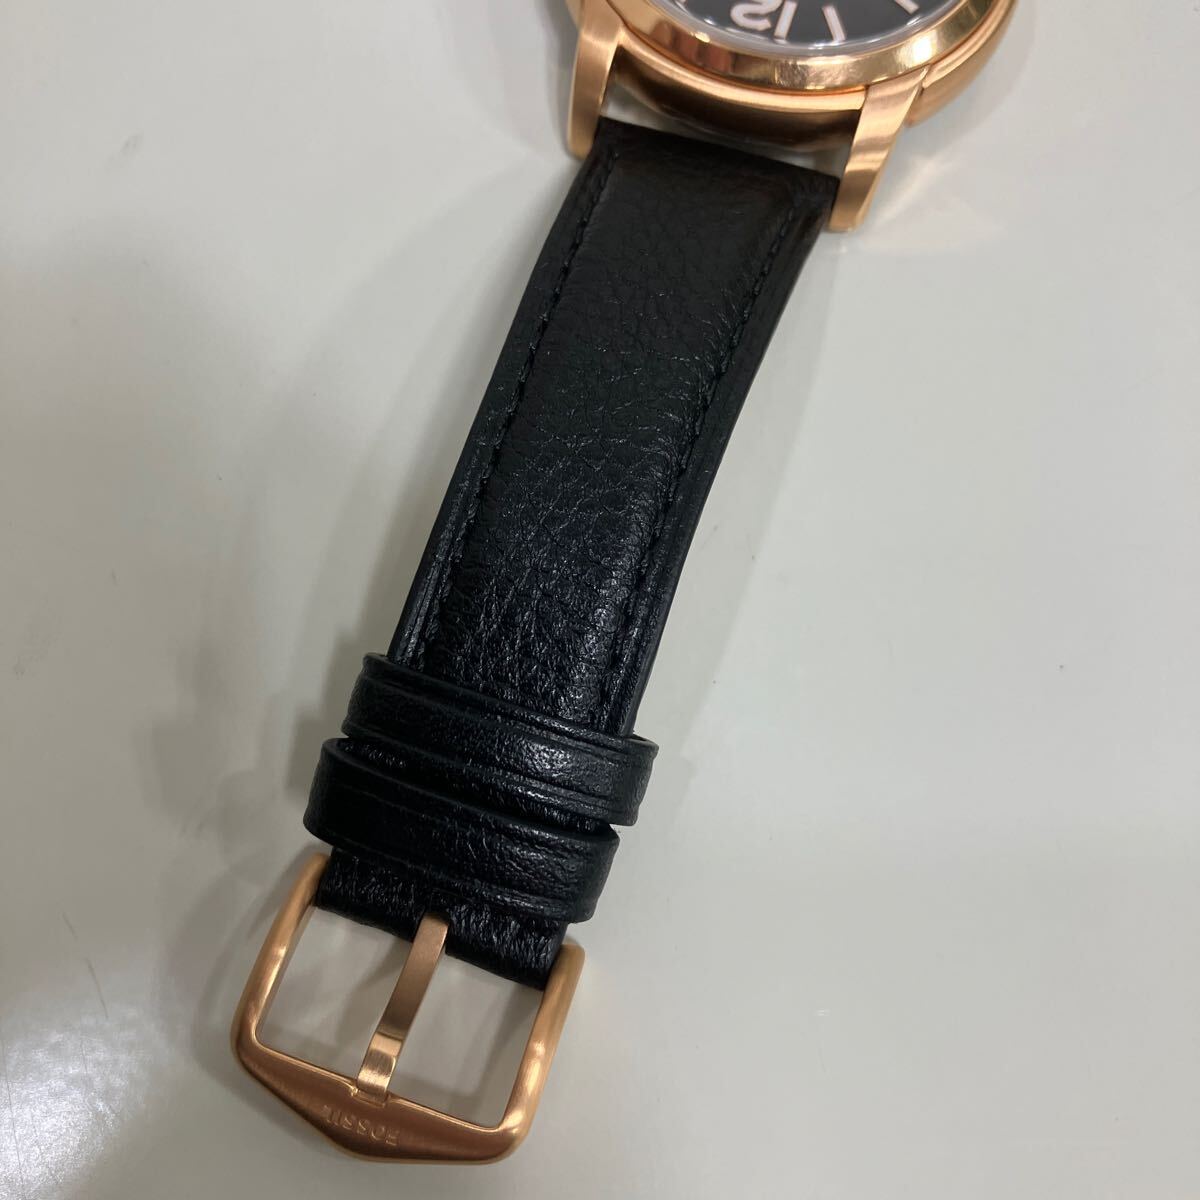  прекрасный товар Fossil FOSSIL HERITAGE автоматический черный LiteHid кожа самозаводящиеся часы мужские наручные часы чёрный циферблат Gold ALP-W189 включение в покупку не возможно 